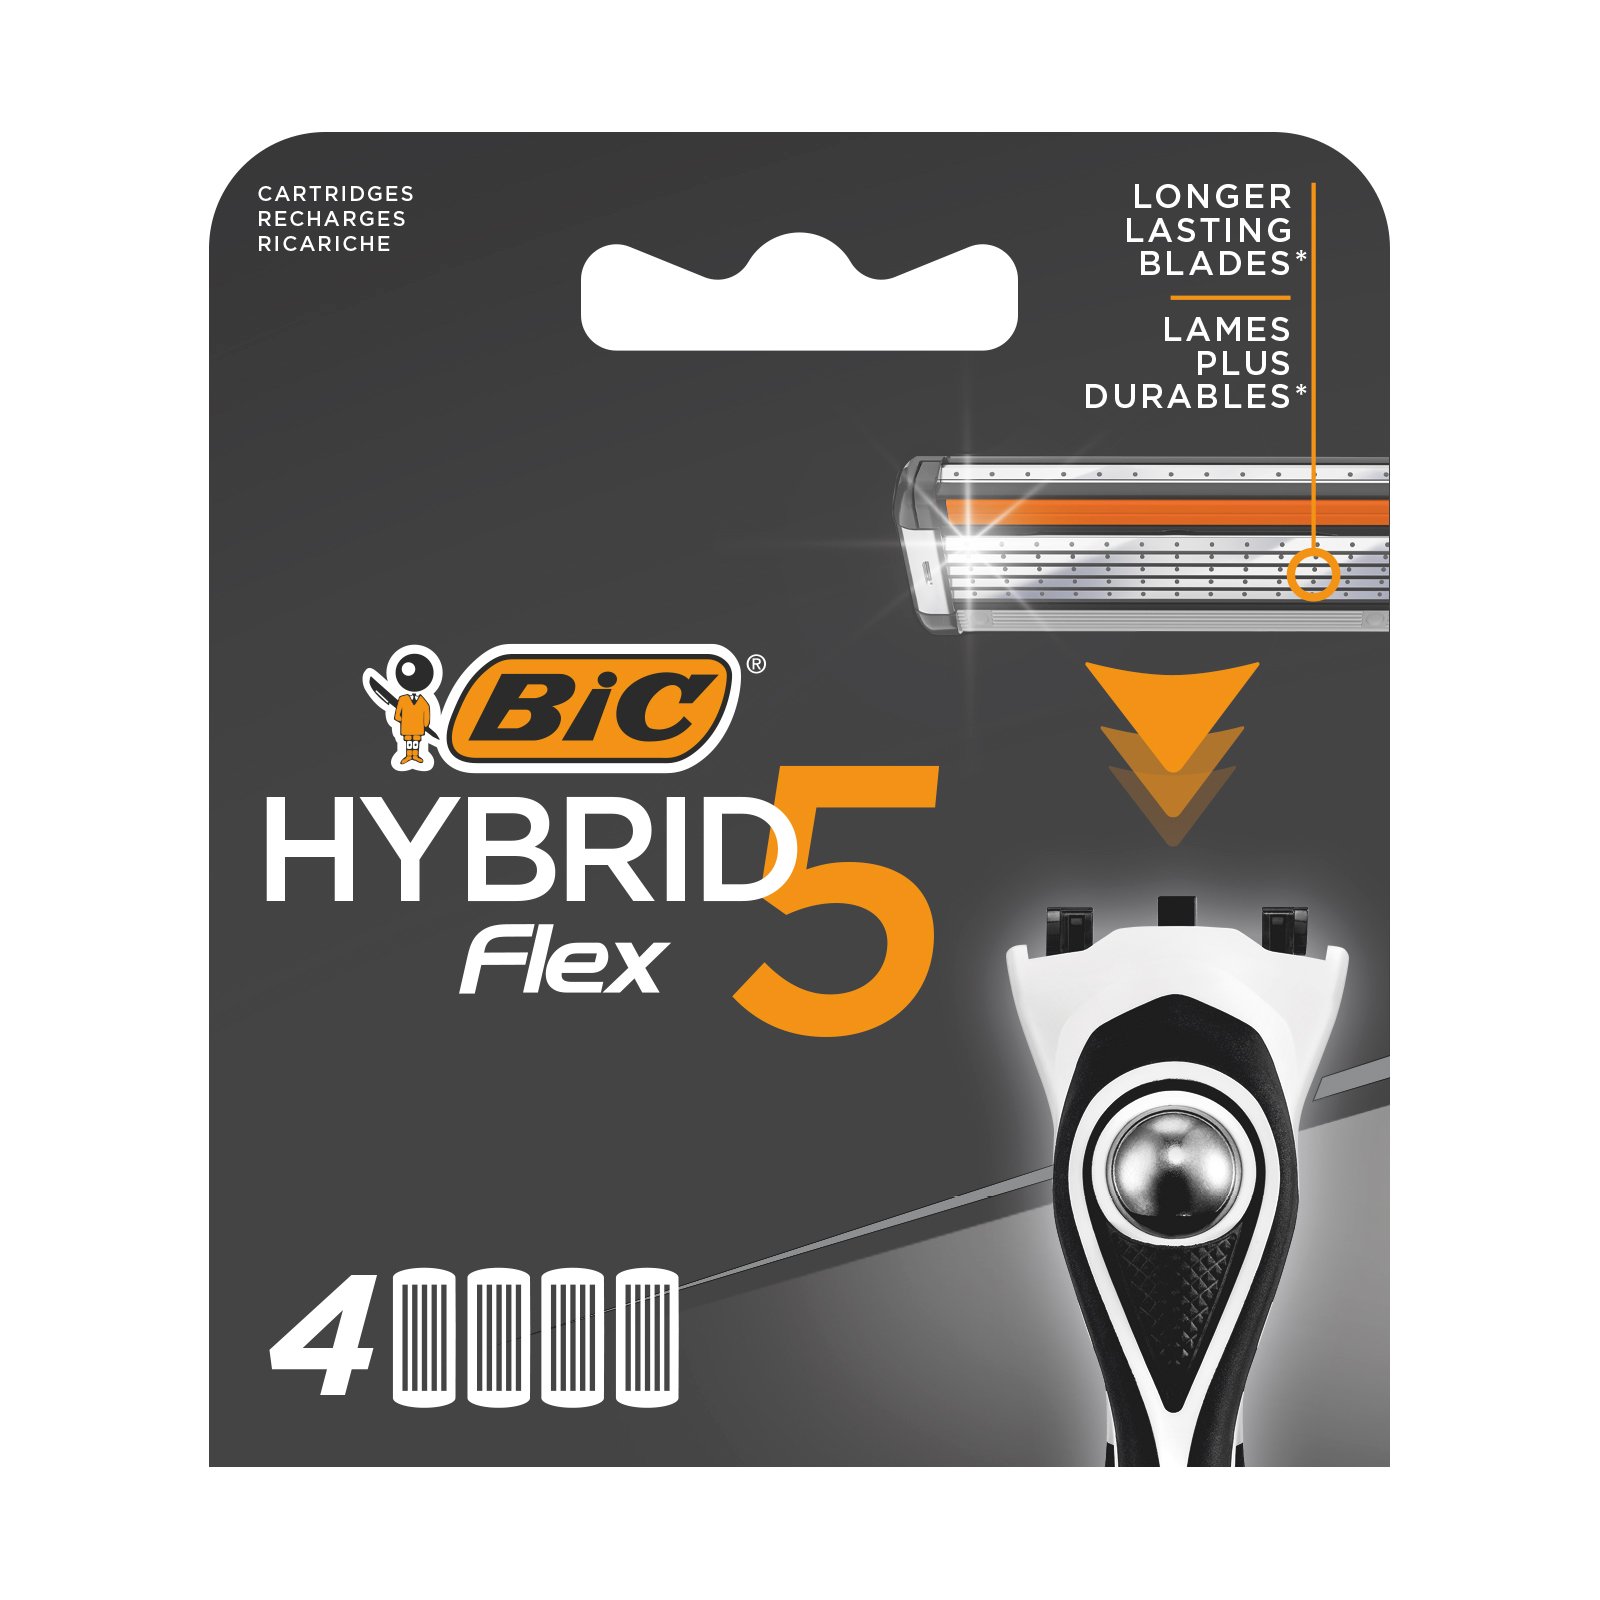 Змінні картриджі для гоління BIC Hybrid 5 Flex, 4 шт. - фото 1